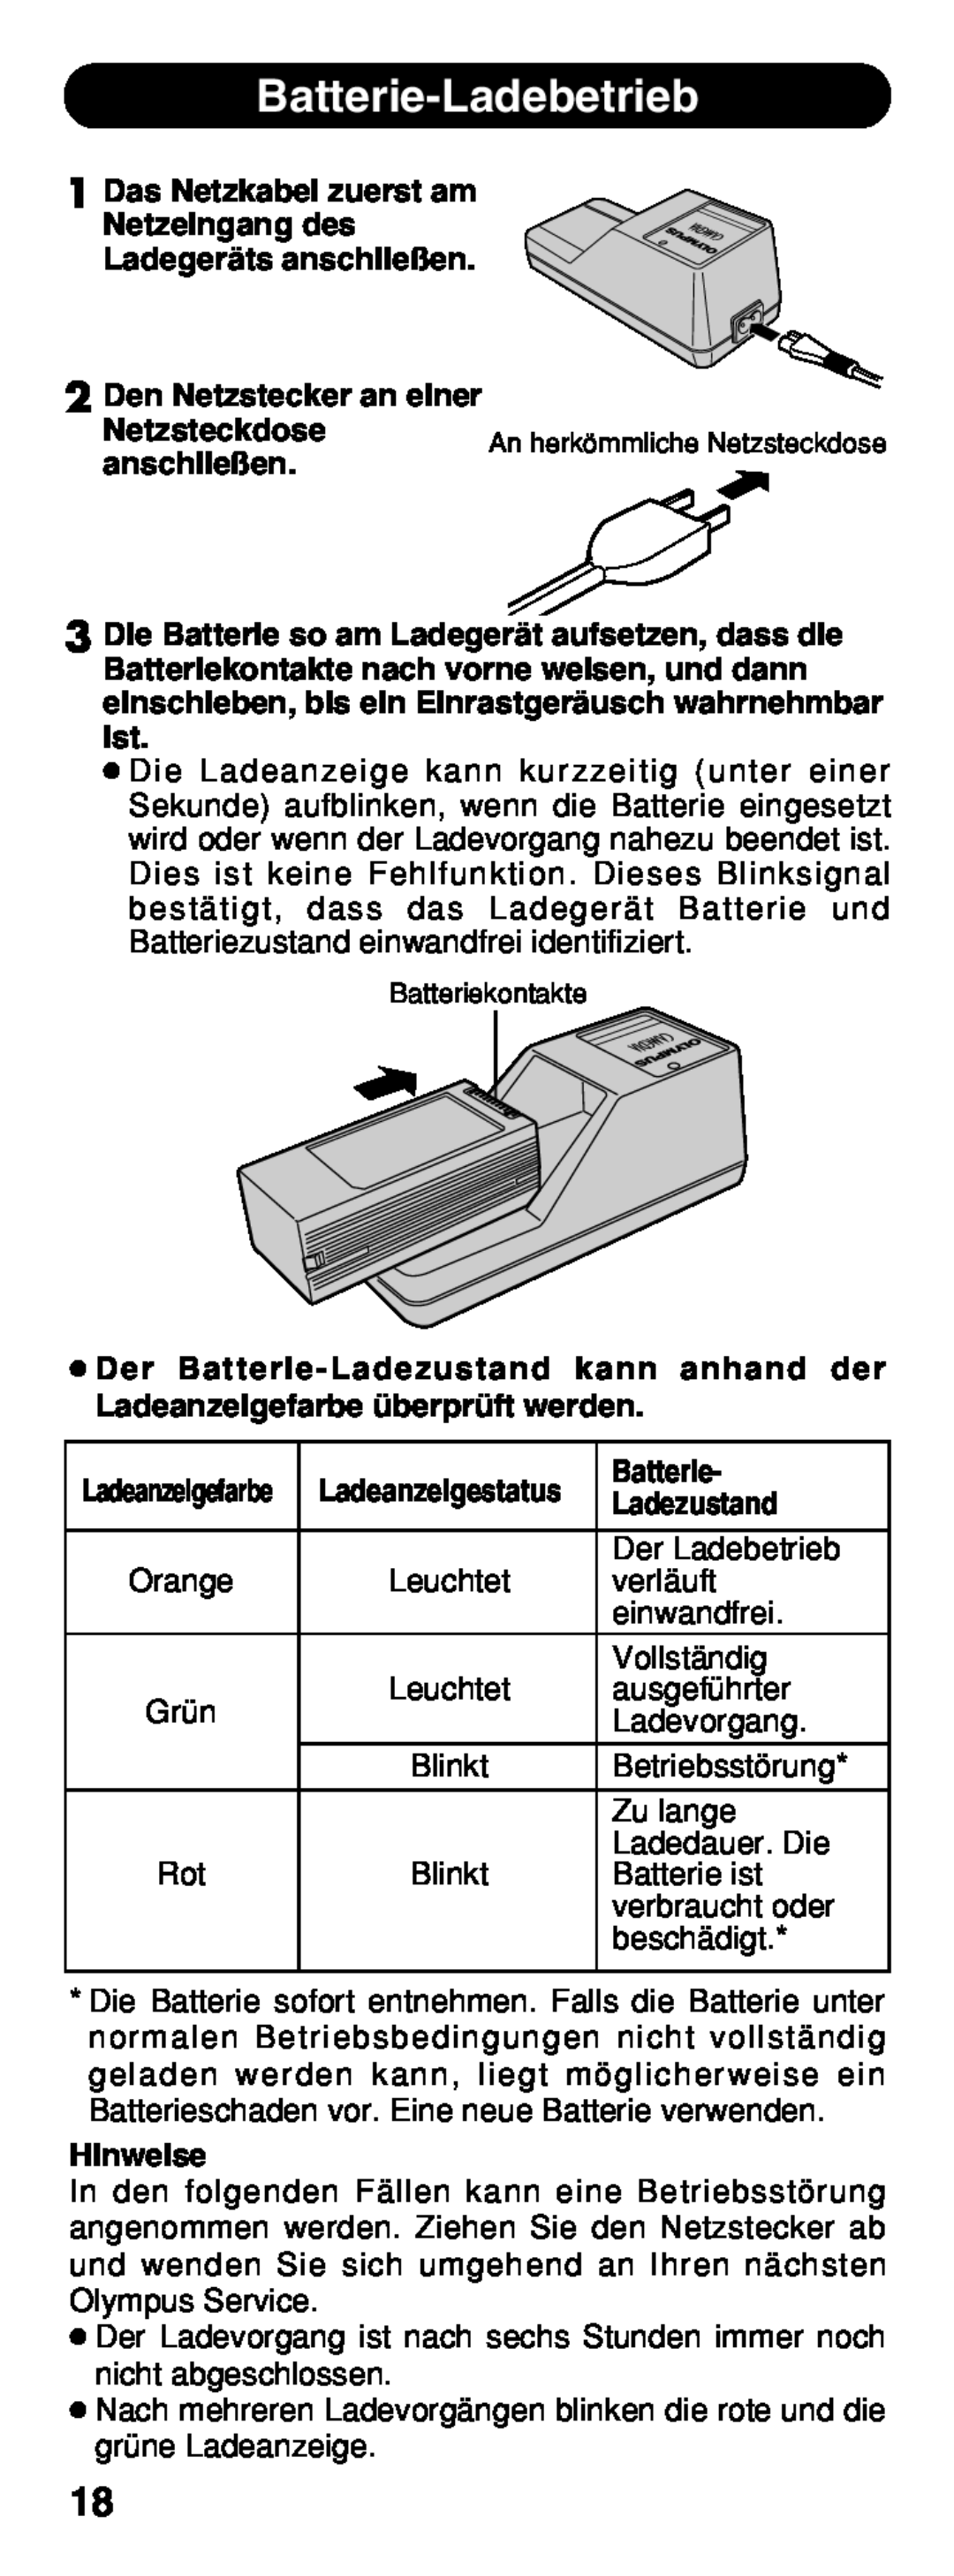 Olympus B-20 LPC Batterie-Ladebetrieb, Das Netzkabel zuerst am Netzeingang des Ladegeräts anschließen, Ladeanzeigestatus 